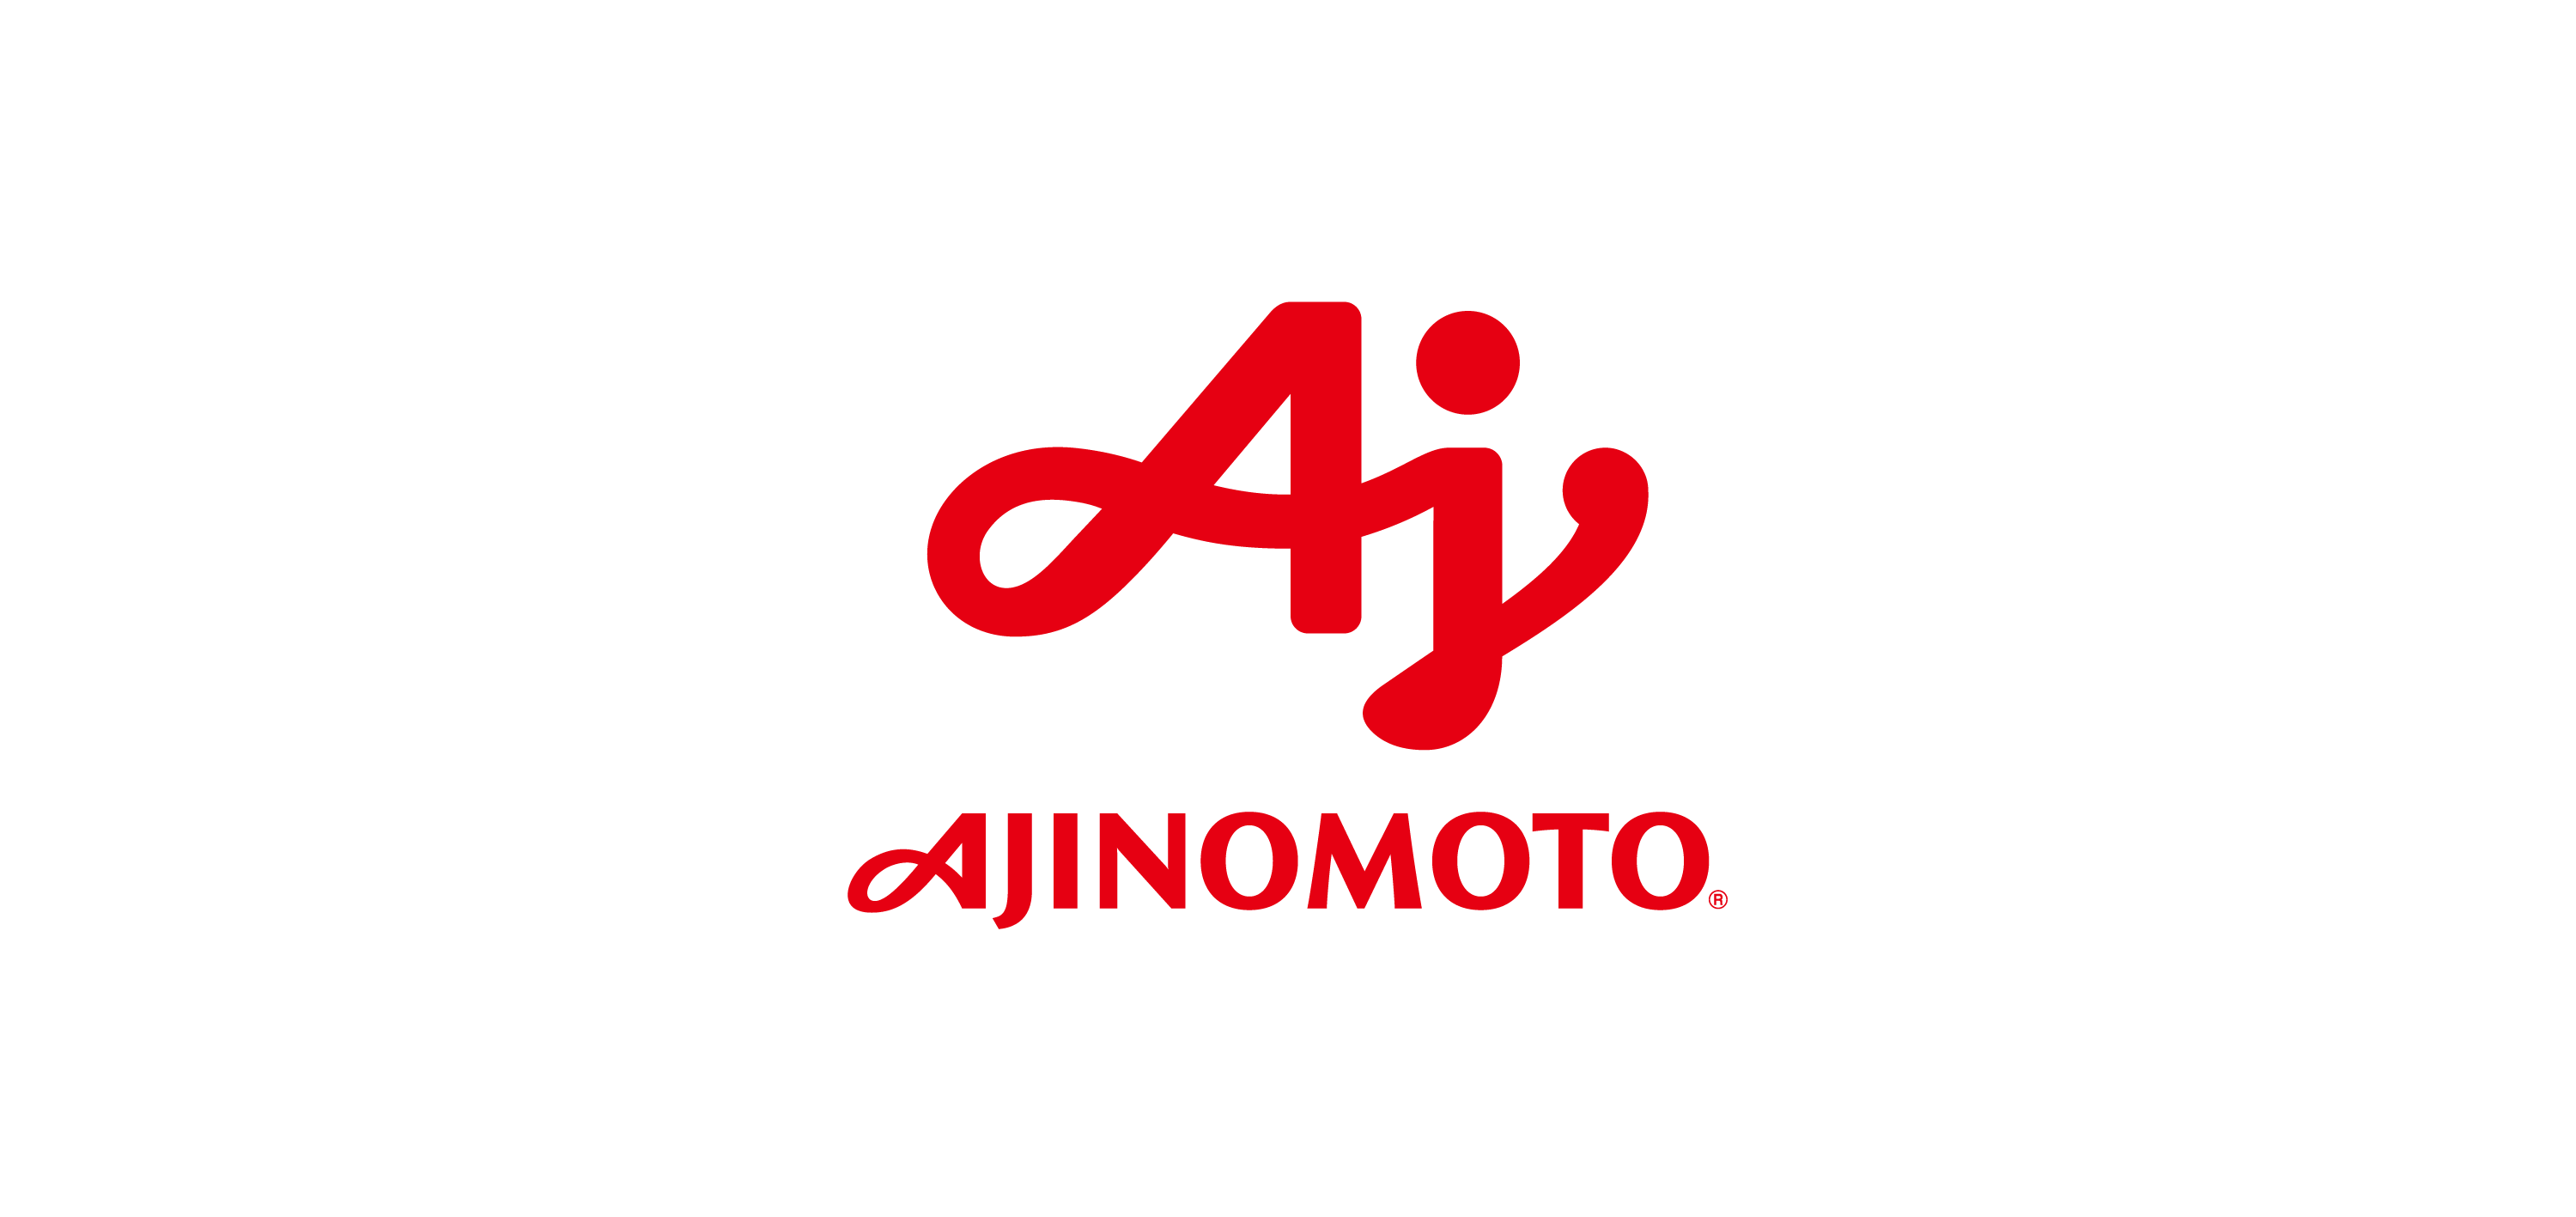 ajinomoto logo vector